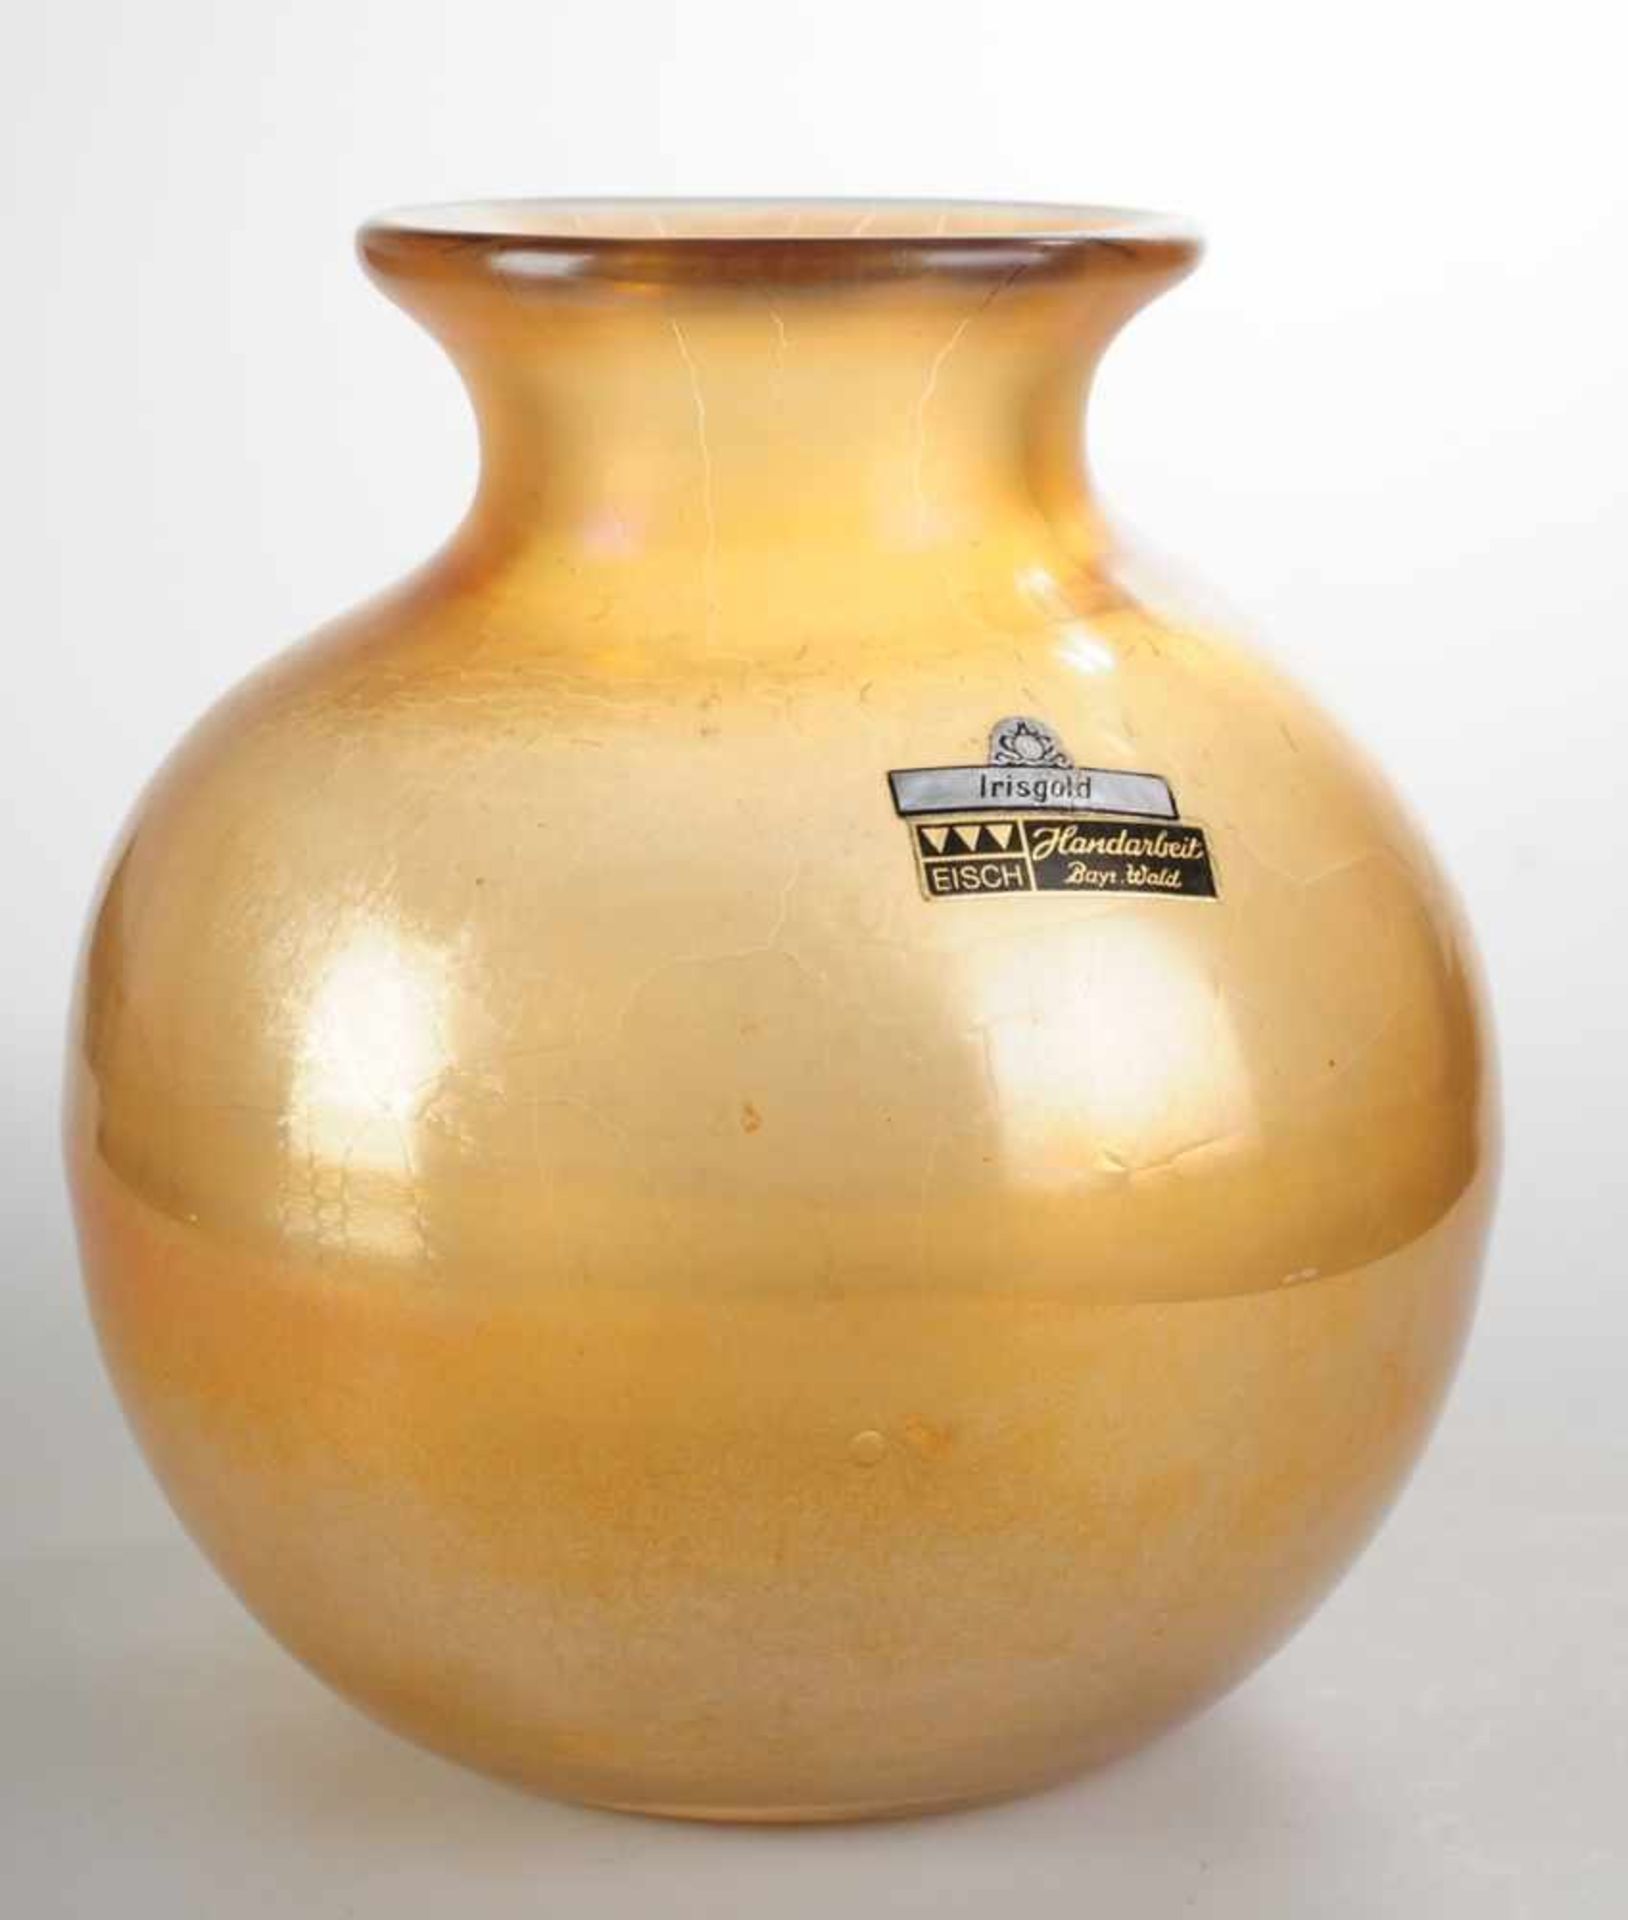 Vase "Irisgold"Farbloses Glas, goldgelb irisiert. Formgeblasen, ausgekugelter Abriss.